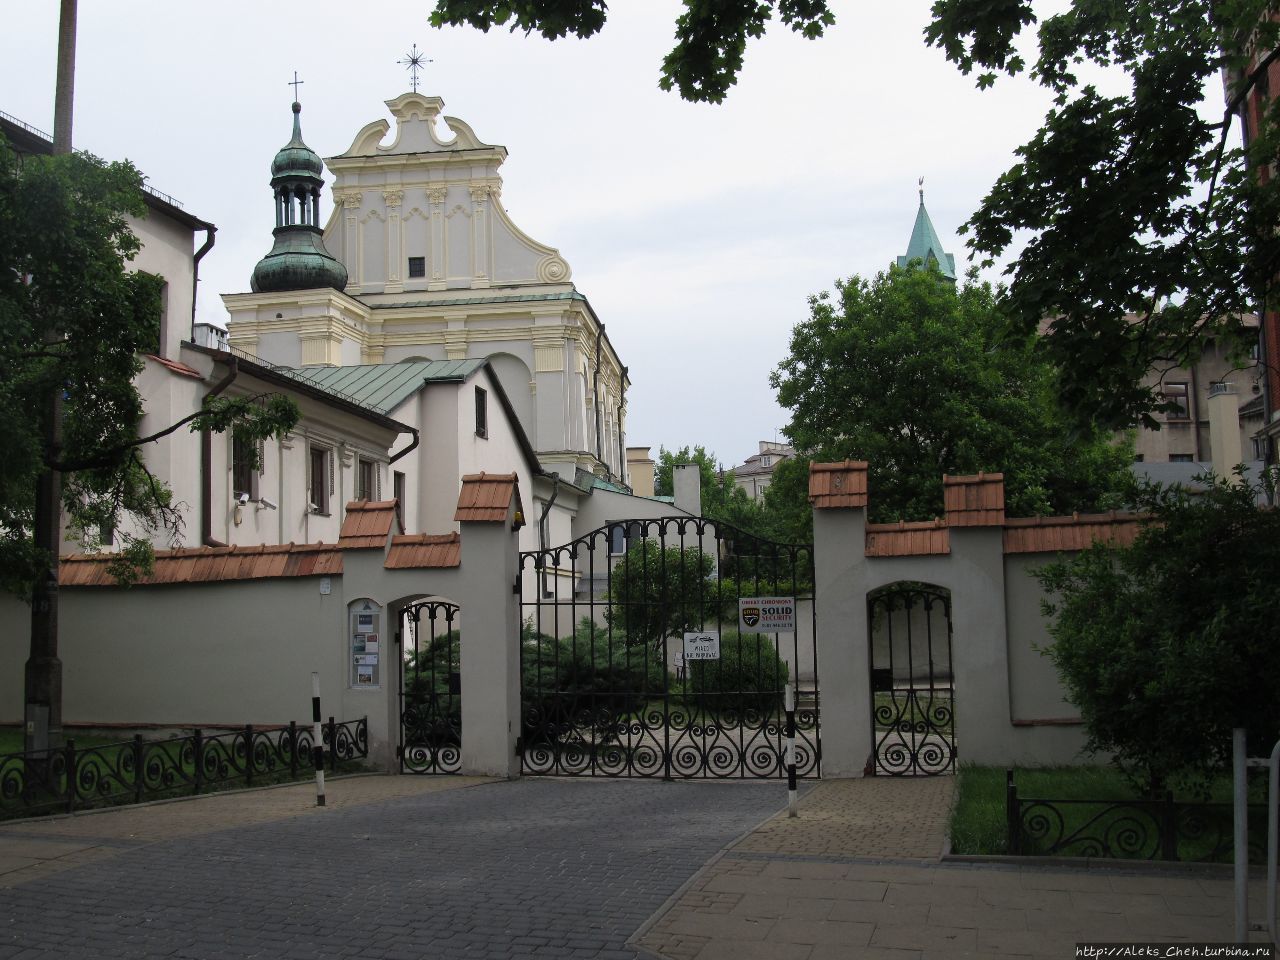 Люблин: путешествие в самый крупный город Восточной Польши Люблин, Польша